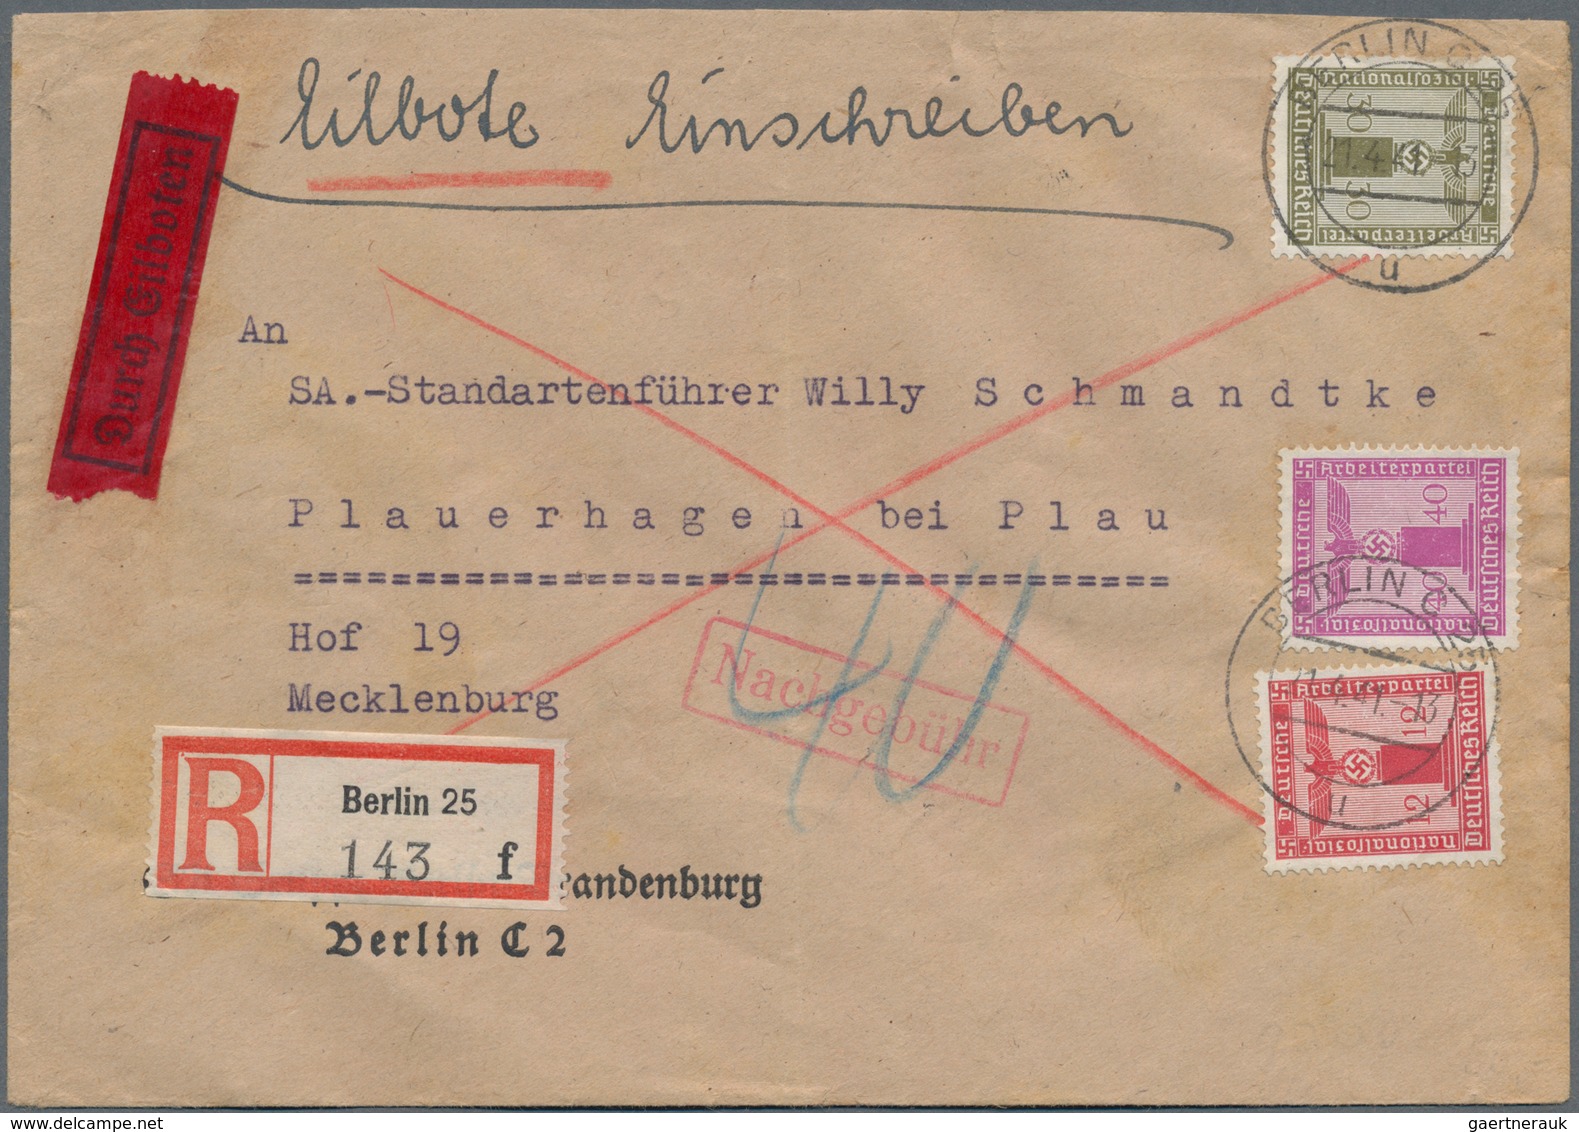 Deutsches Reich: 1880/1945 ca., hochwertiger Sammlungbestand mit ca.130 Belegen, dabei sehr viele be